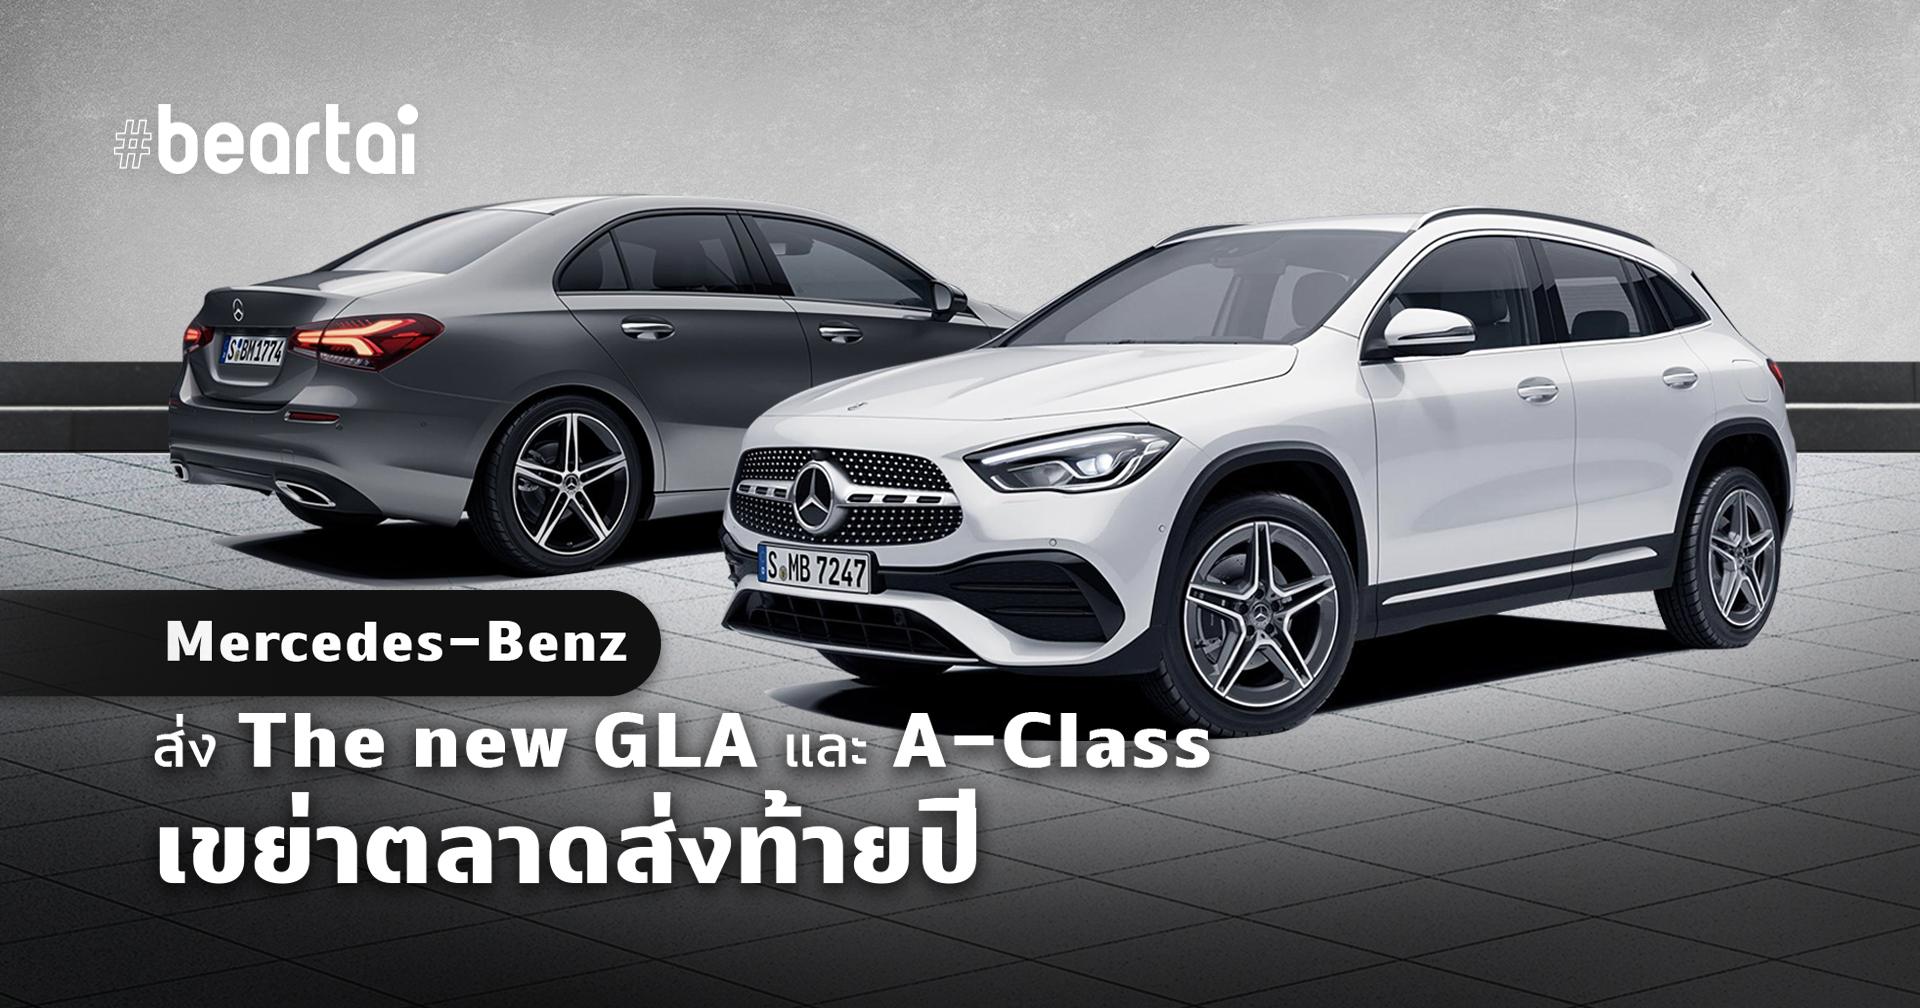 Mercedes-Benz ส่ง The new GLA และ A-Class รุ่นประกอบในประเทศ เขย่าตลาดพรีเมียมคอมแพ็ค